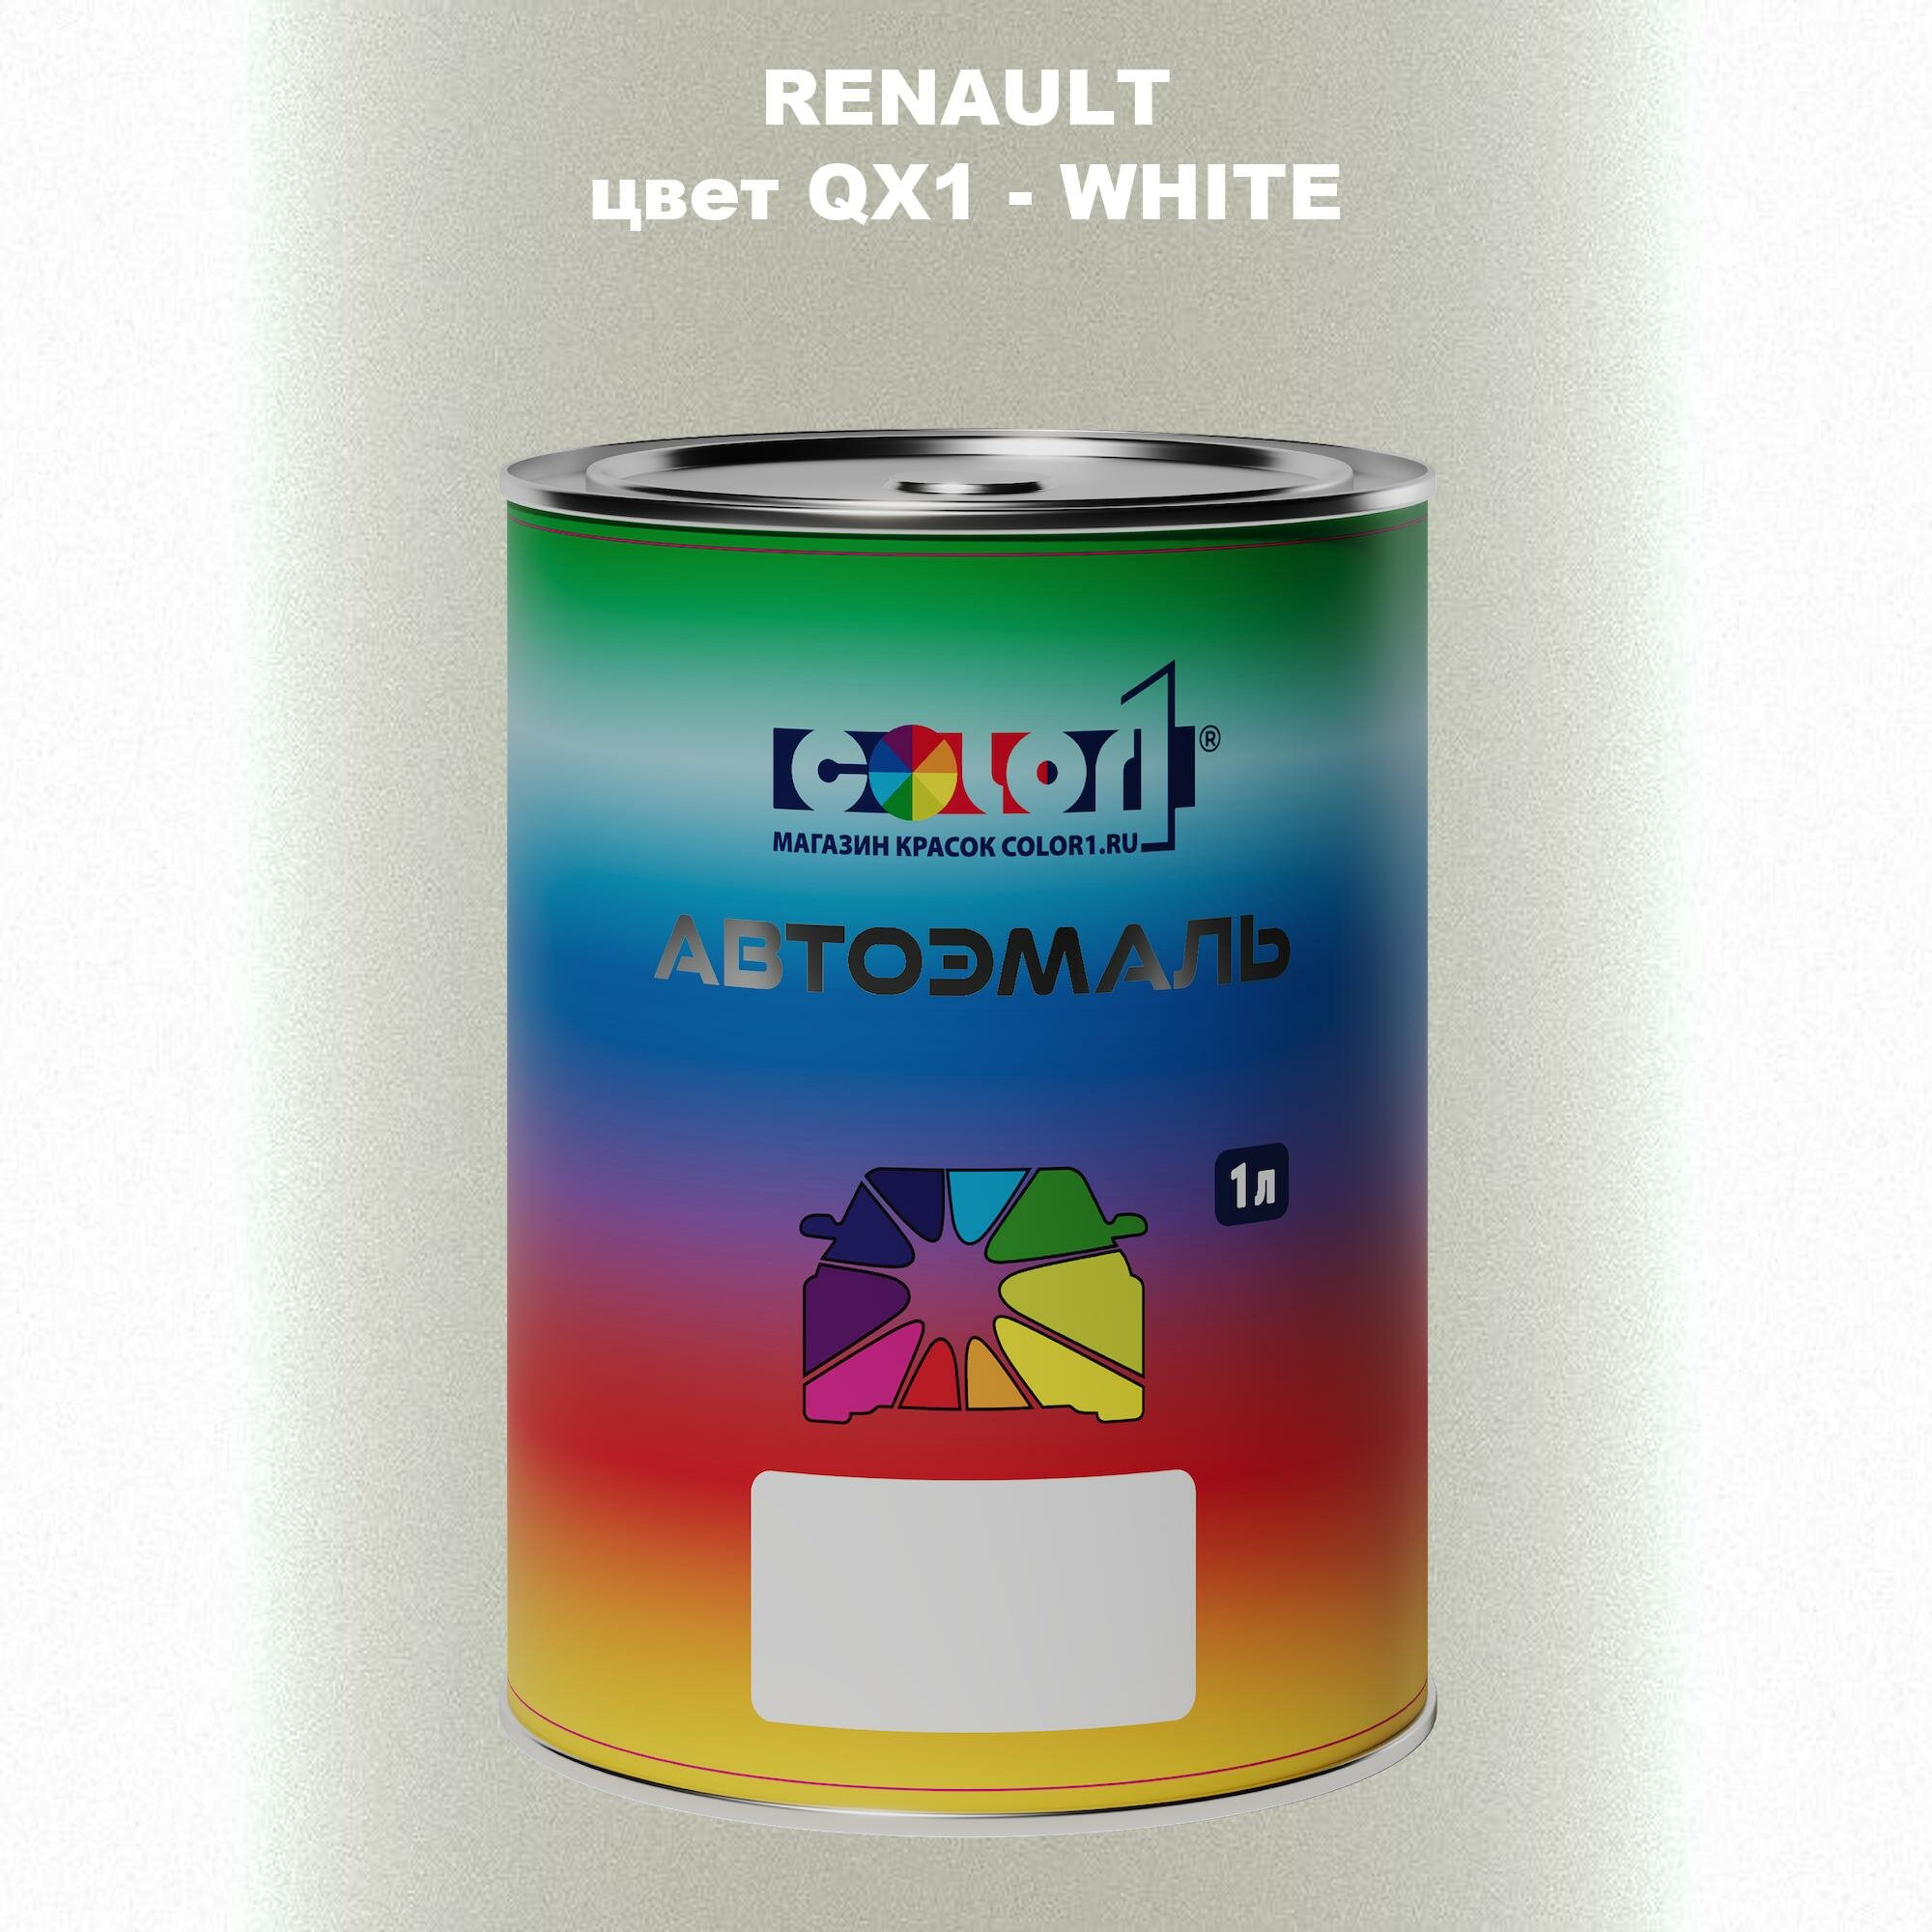 Автомобильная краска COLOR1 для RENAULT, цвет QX1 - WHITE